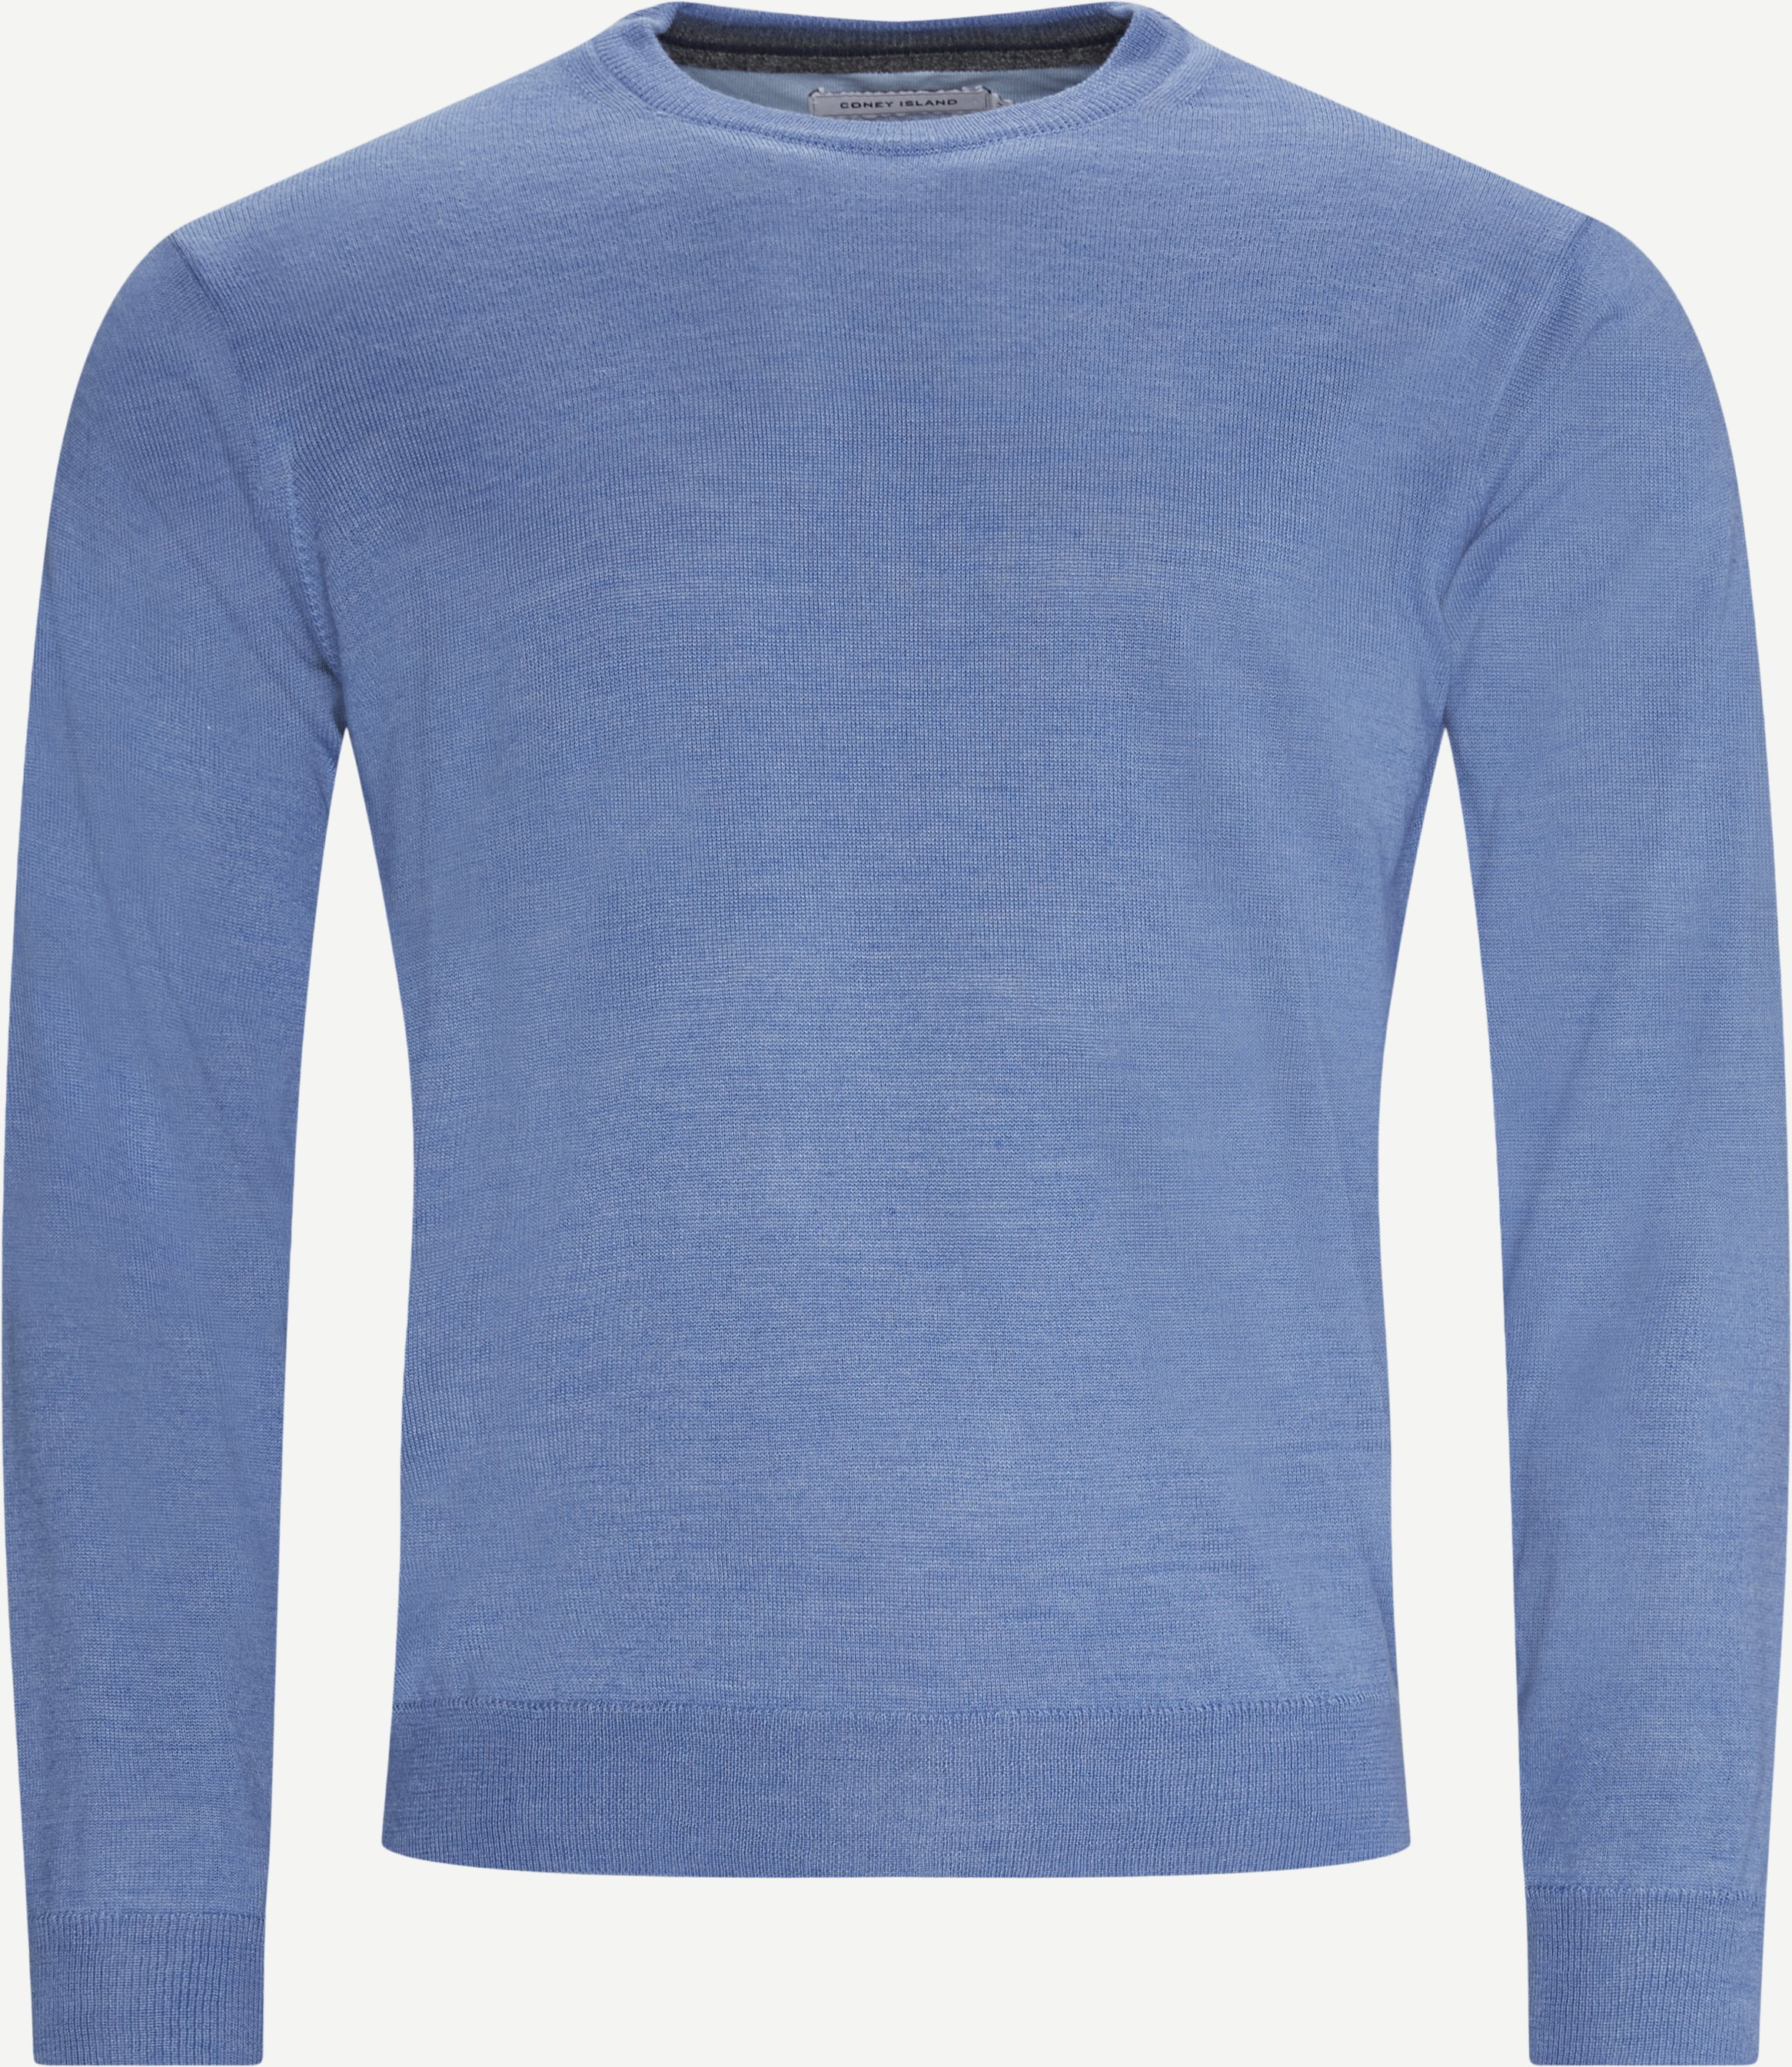 Lipan Merino knitted sweater - Knitwear - Regular fit - Blue